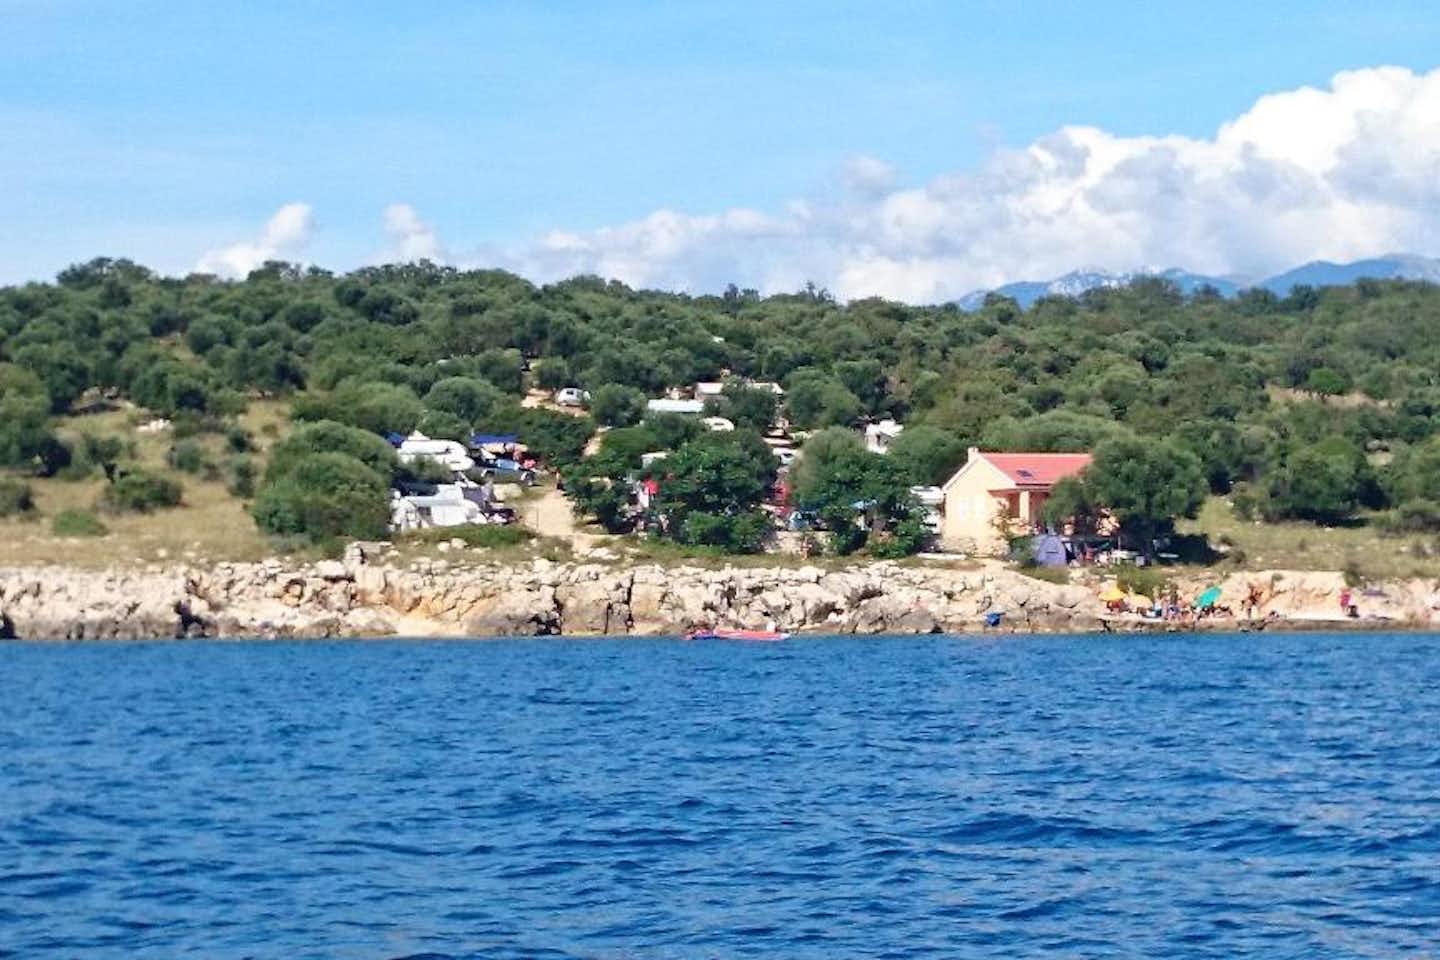 Camping Škovrdara  - Blick auf den Campingplatz am Ufer der kroatischen Adria